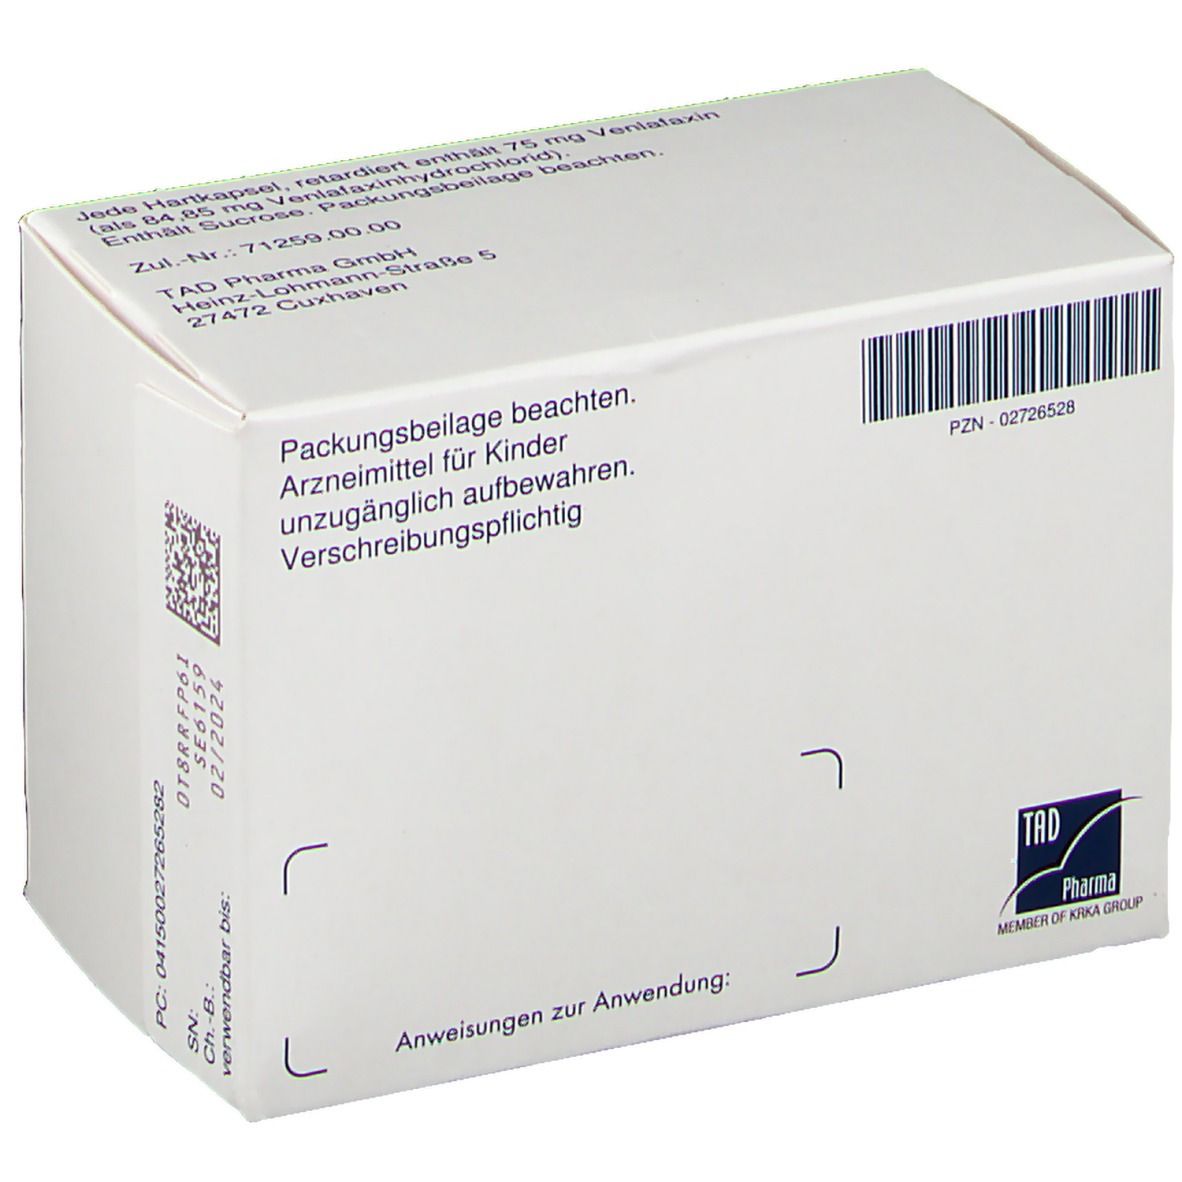 Venlafaxin TAD® 75 mg